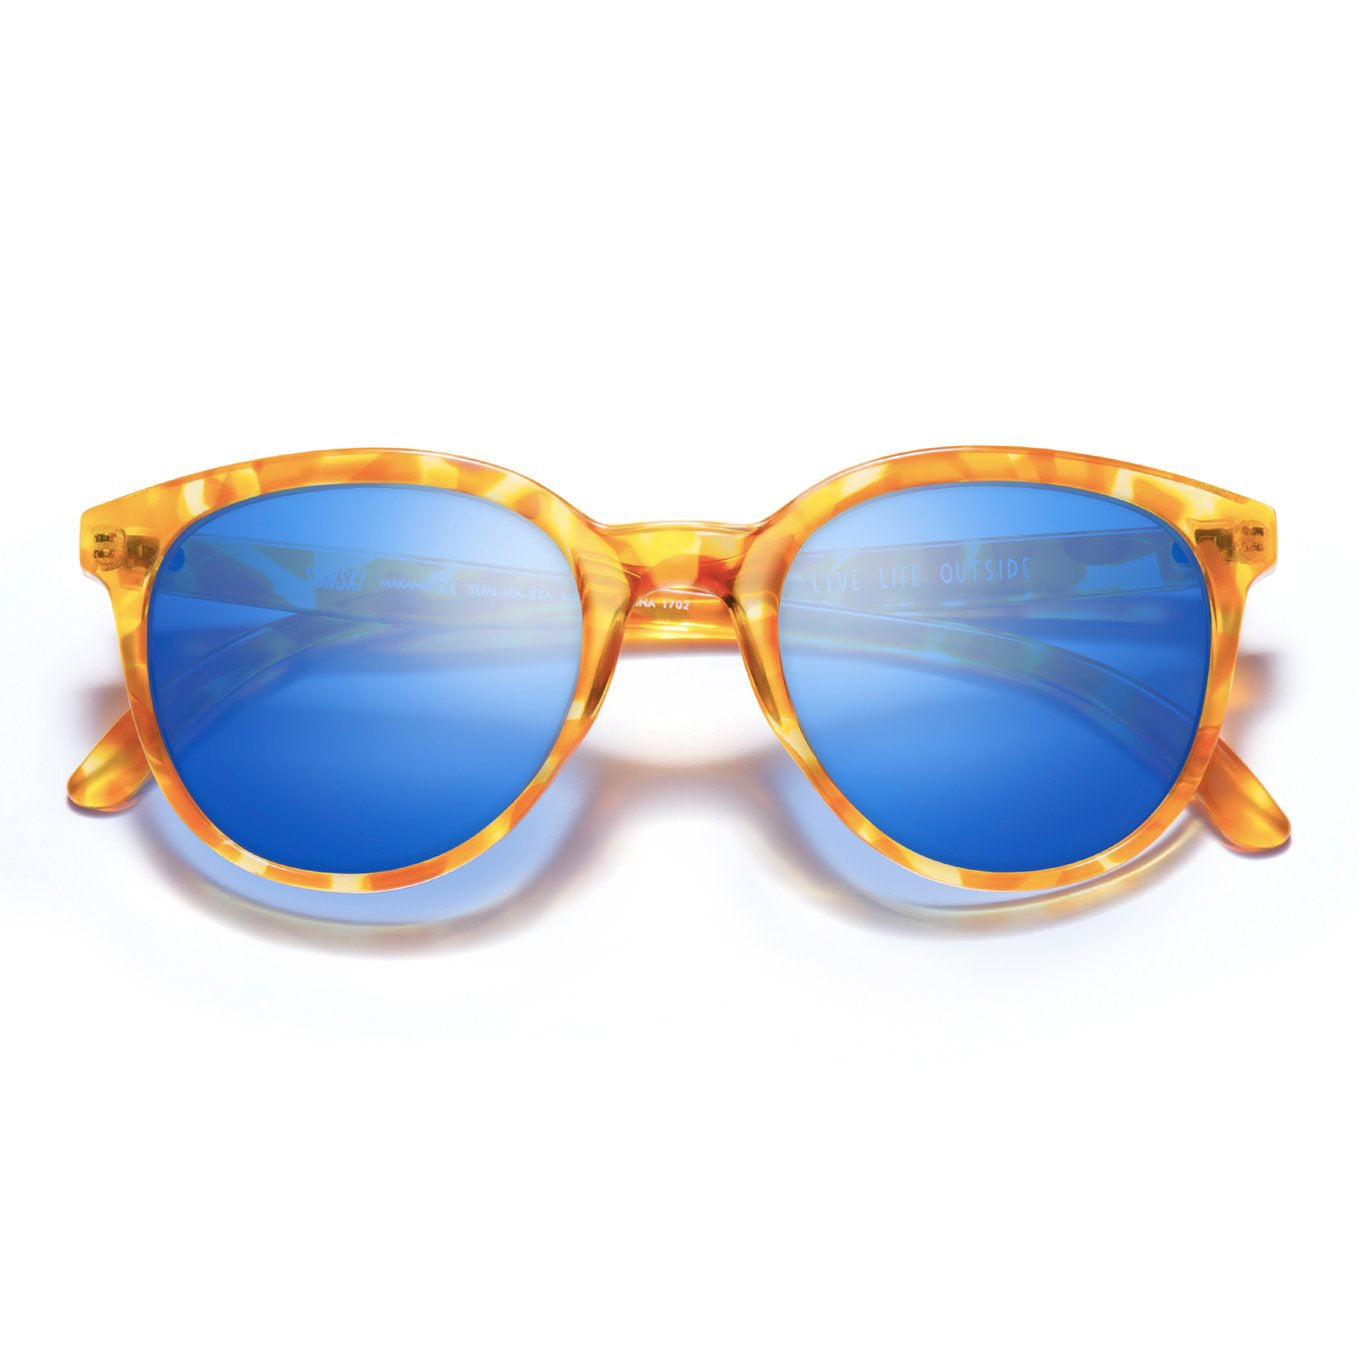 SUNSKI Sunglasses - Makani Blonde Tortoise Aqua